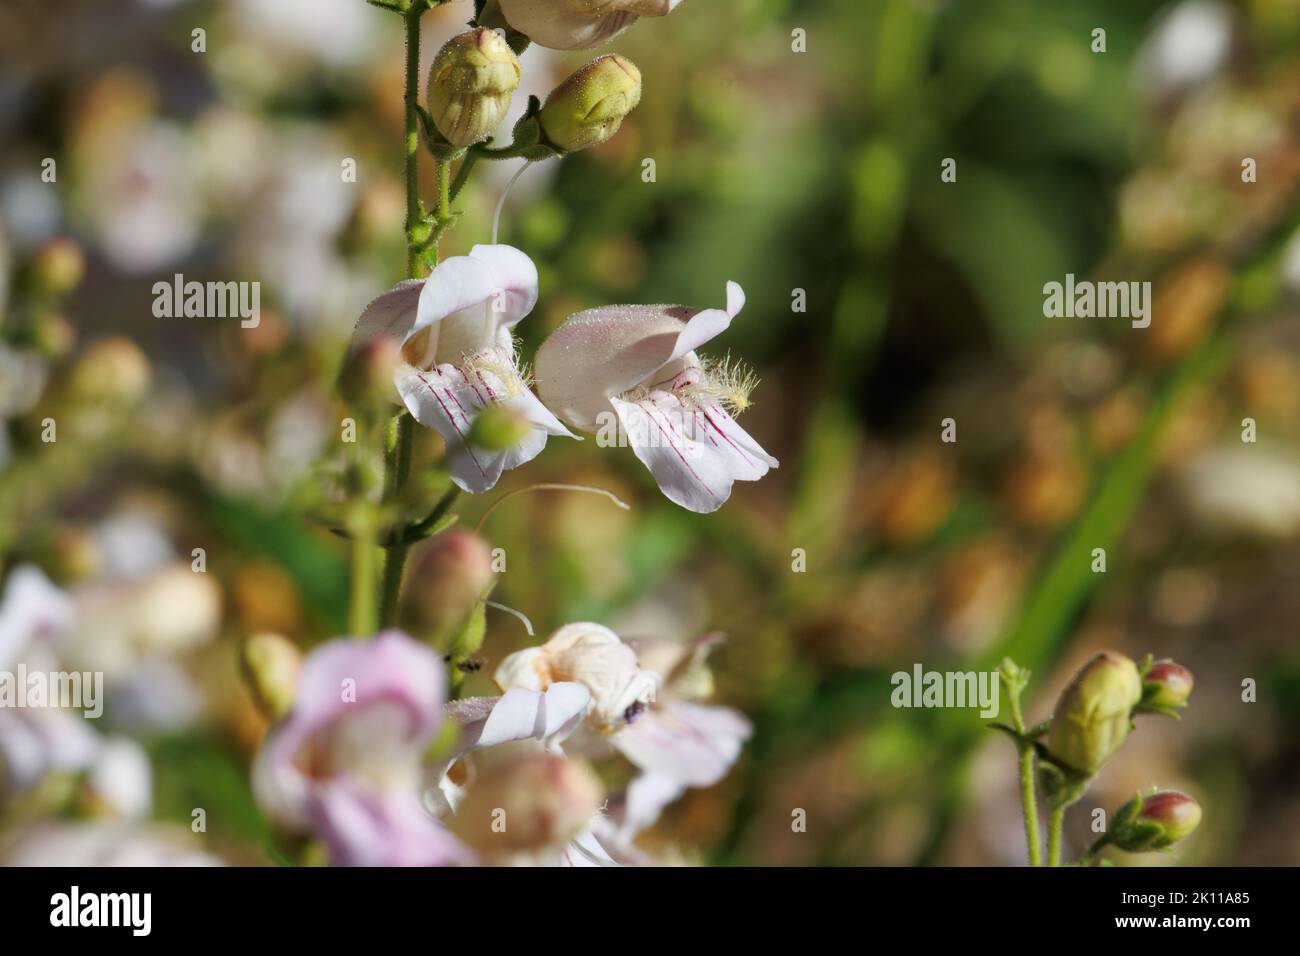 Blütenstand von Penstemon Grinnelii, Plantaginaceae, einheimischen mehrjährigen Kraut in den San Jacinto Mountains, Sommer. Stockfoto